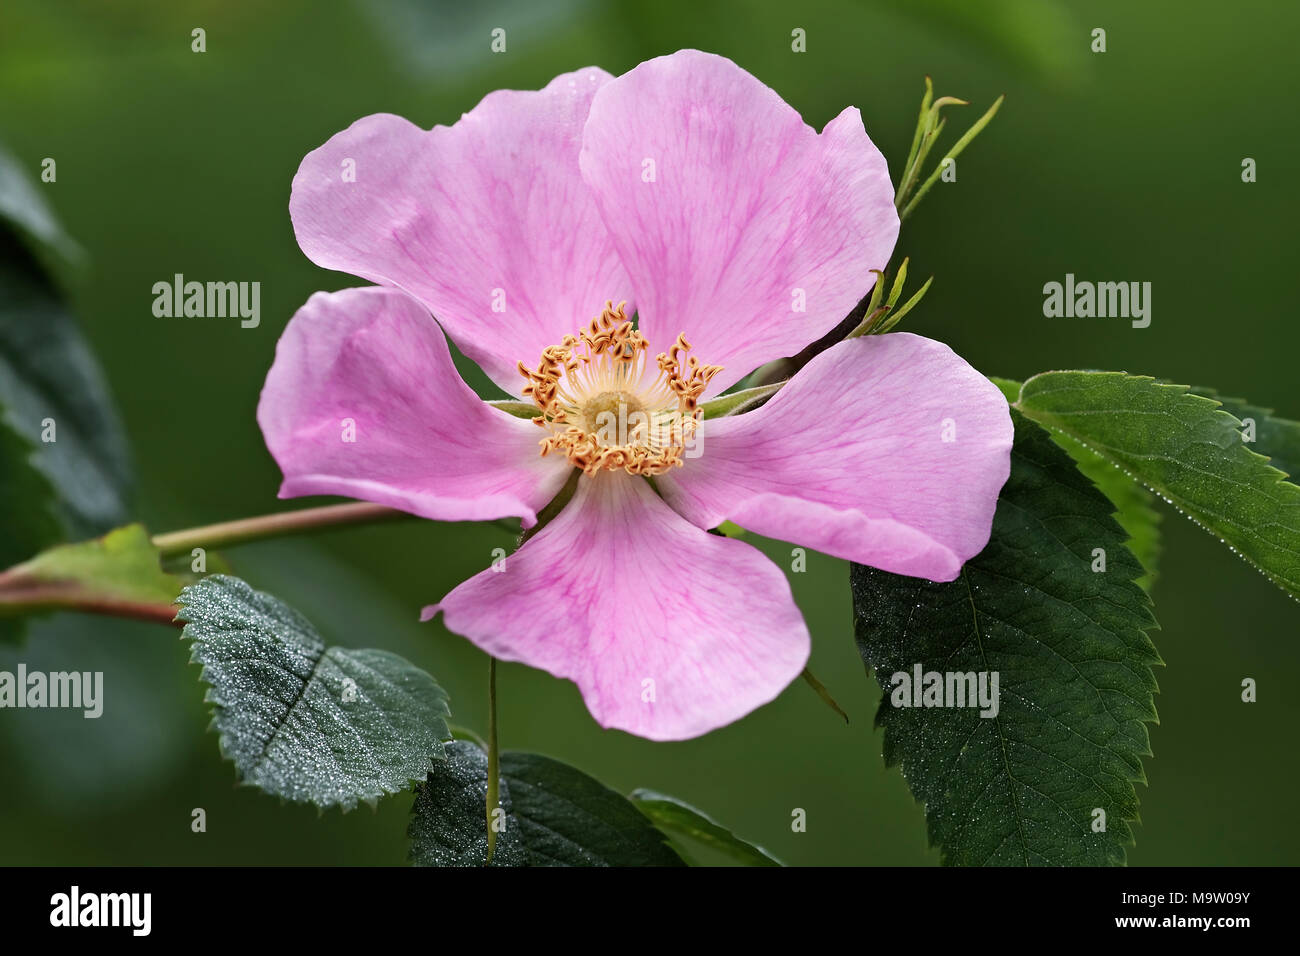 Stachelige Wild Rose (Rosa acicularis). Auch bekannt als stachelige Rose, borstige Rose, Wild Rose und arktischen Rose. Stockfoto